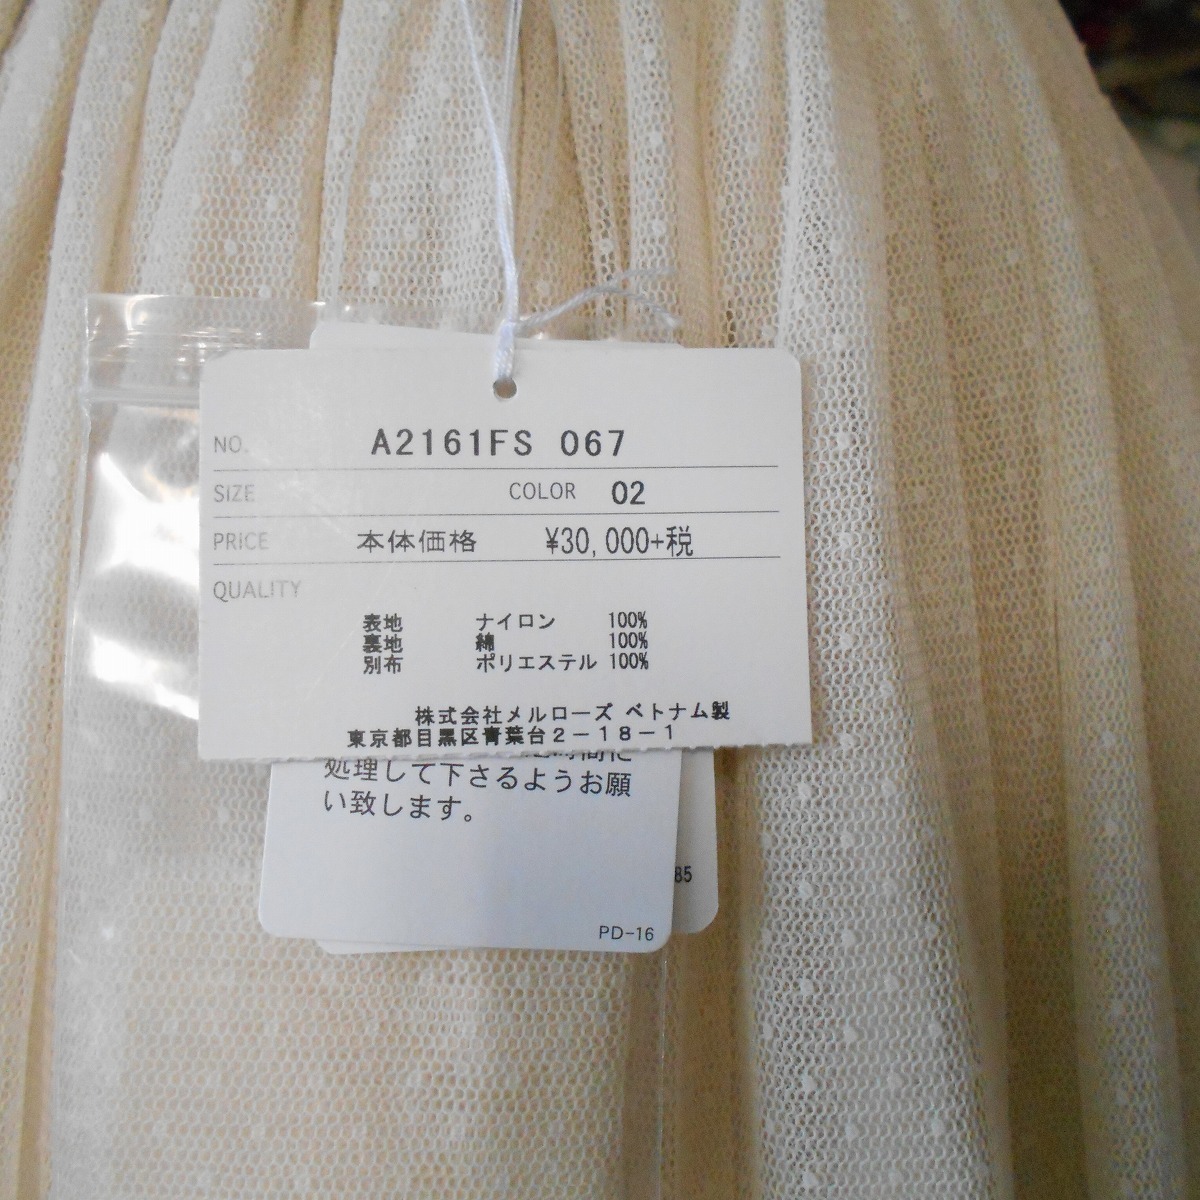 2016年 新品 タグ付き 32400円 ピンクハウス PINKHOUSE 裾 フリル 有 ドット チュール & ダブルチュール の 素敵 な スカート_画像8